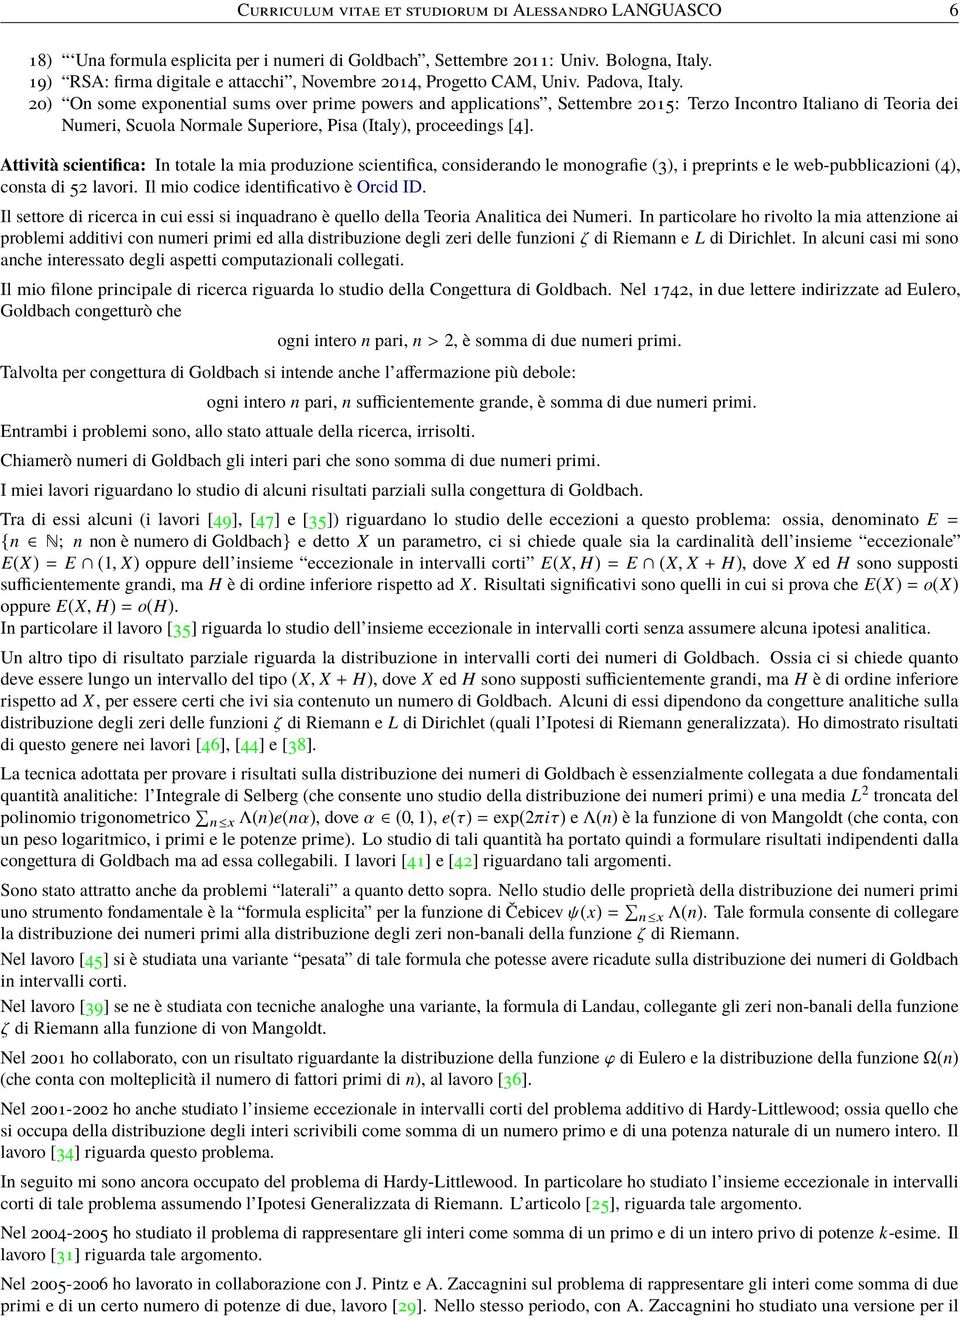 20) On some exponential sums over prime powers and applications, Settembre 2015: Terzo Incontro Italiano di Teoria dei Numeri, Scuola Normale Superiore, Pisa (Italy), proceedings [4].